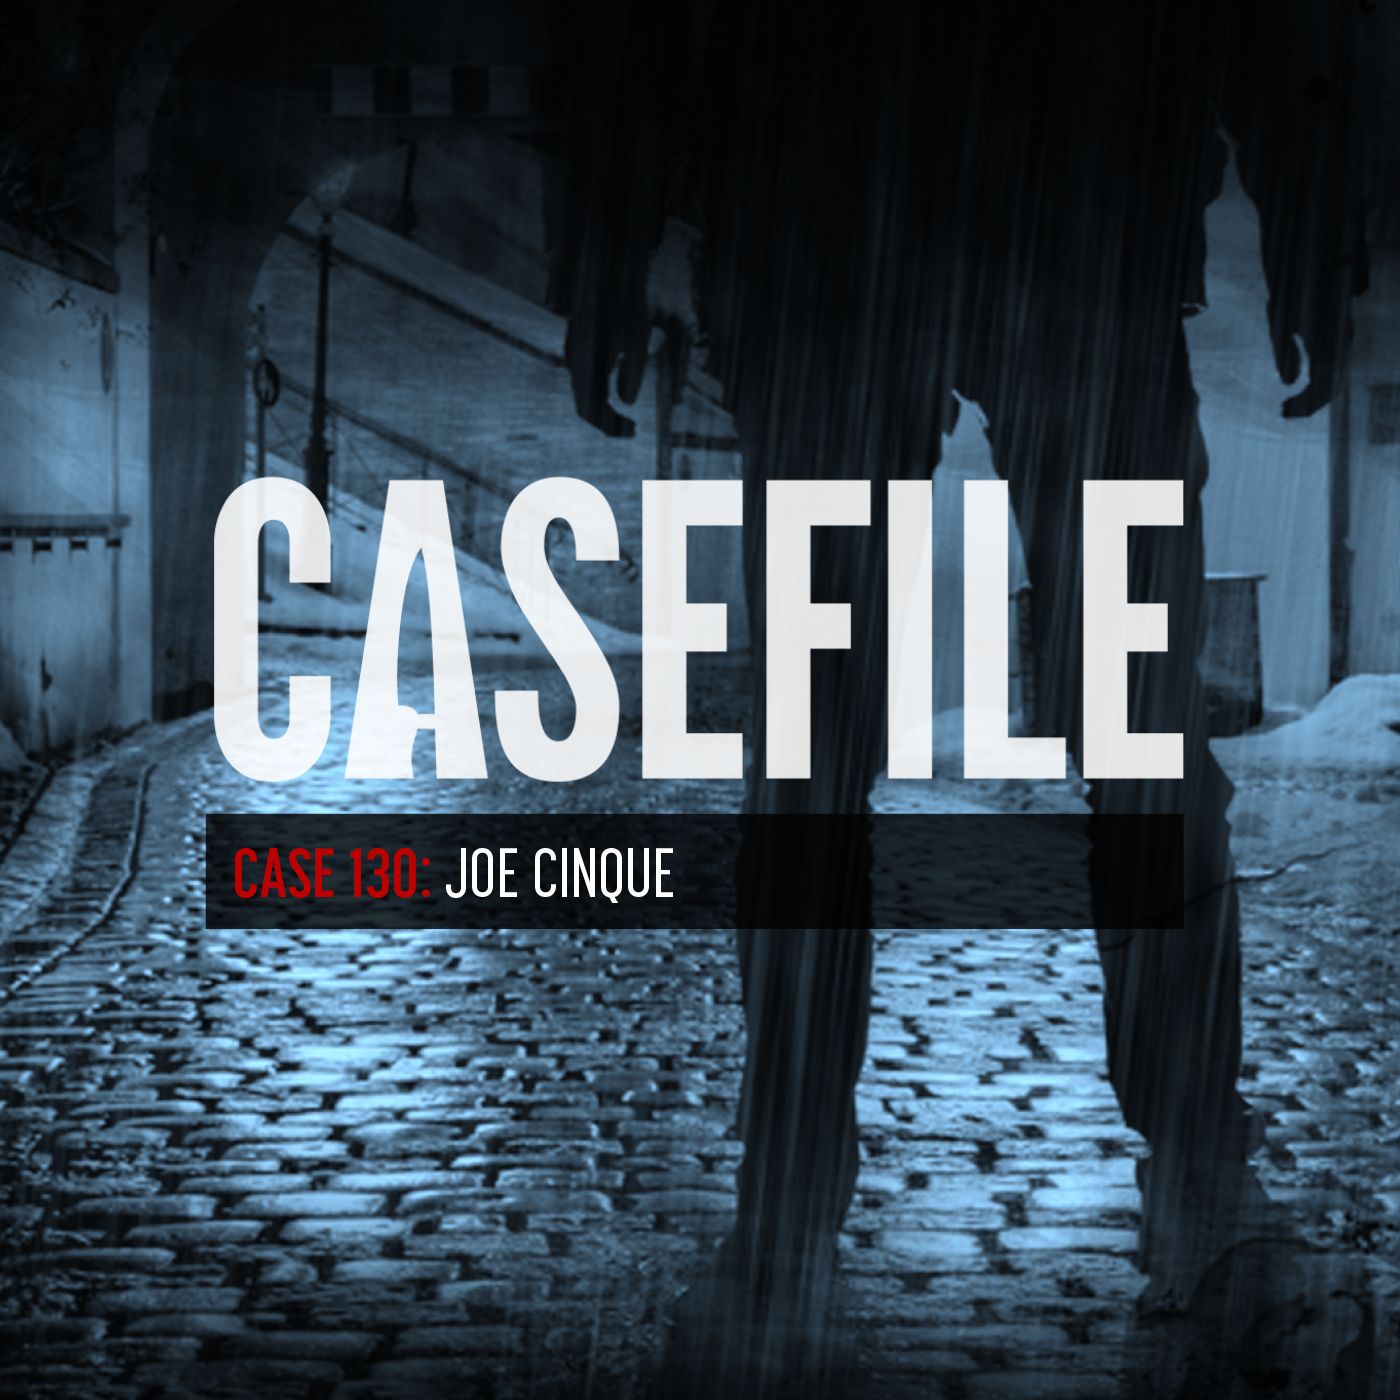 Case 130: Joe Cinque